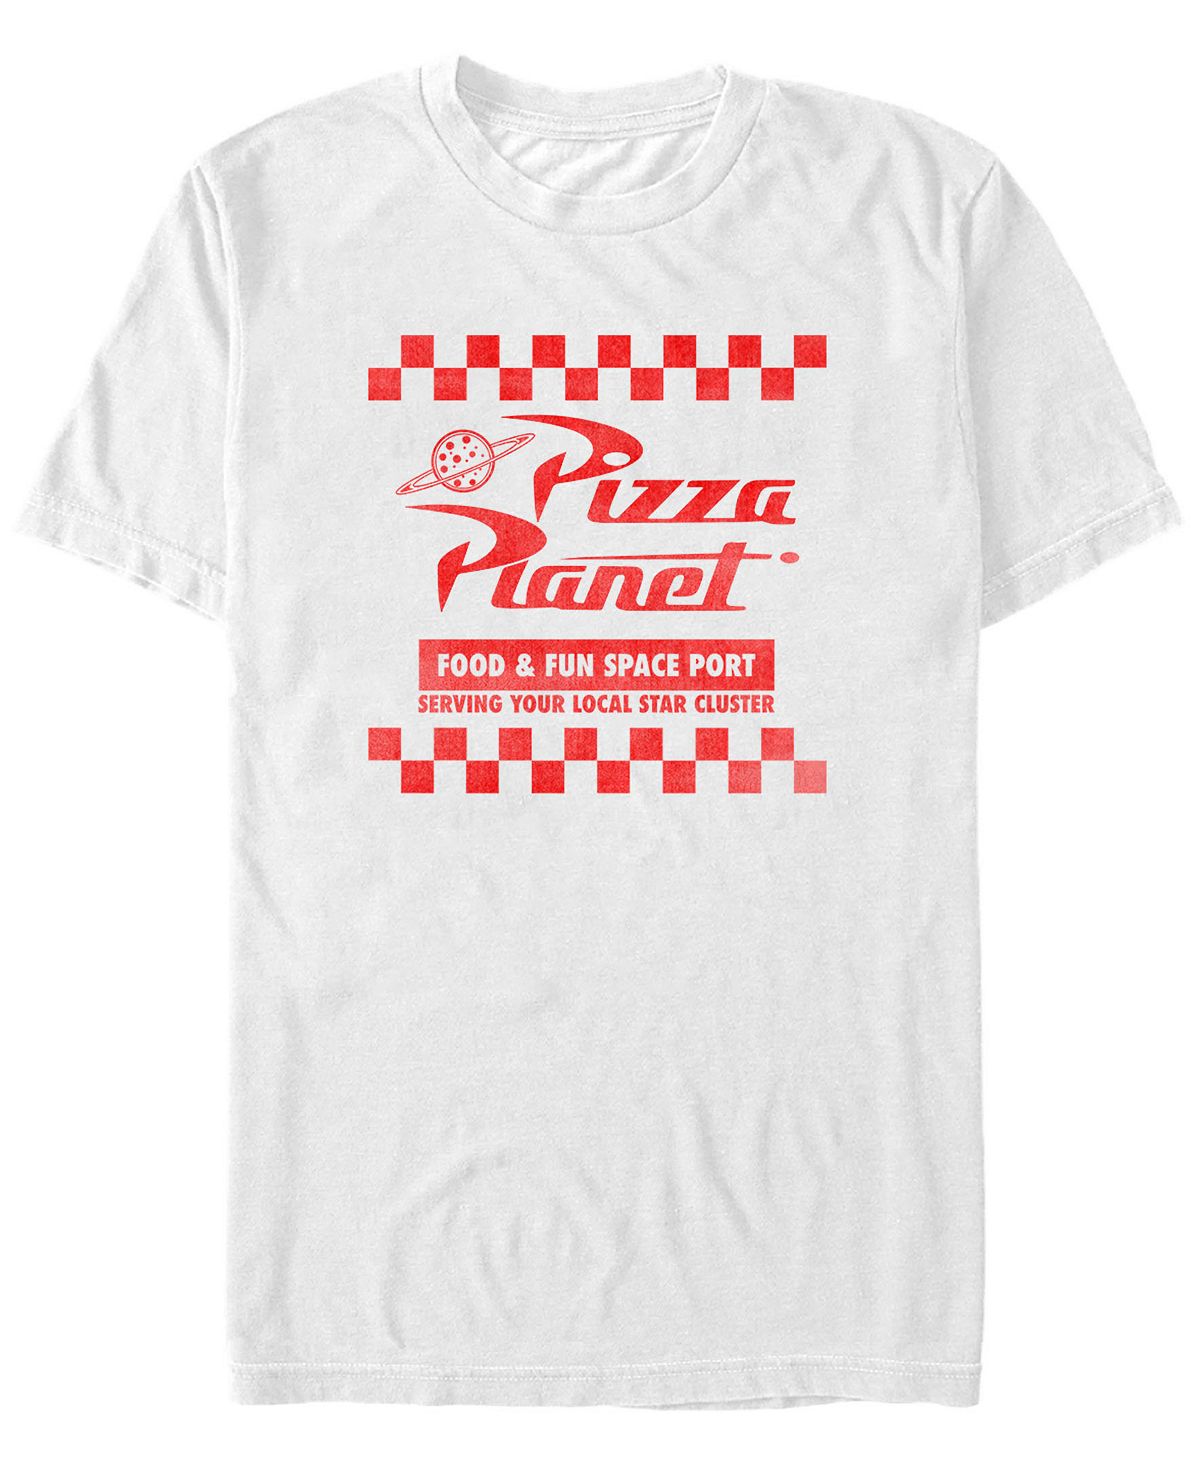 Мужская футболка с коротким рукавом disney pixar «история игрушек» «планета пиццы» Fifth Sun, белый